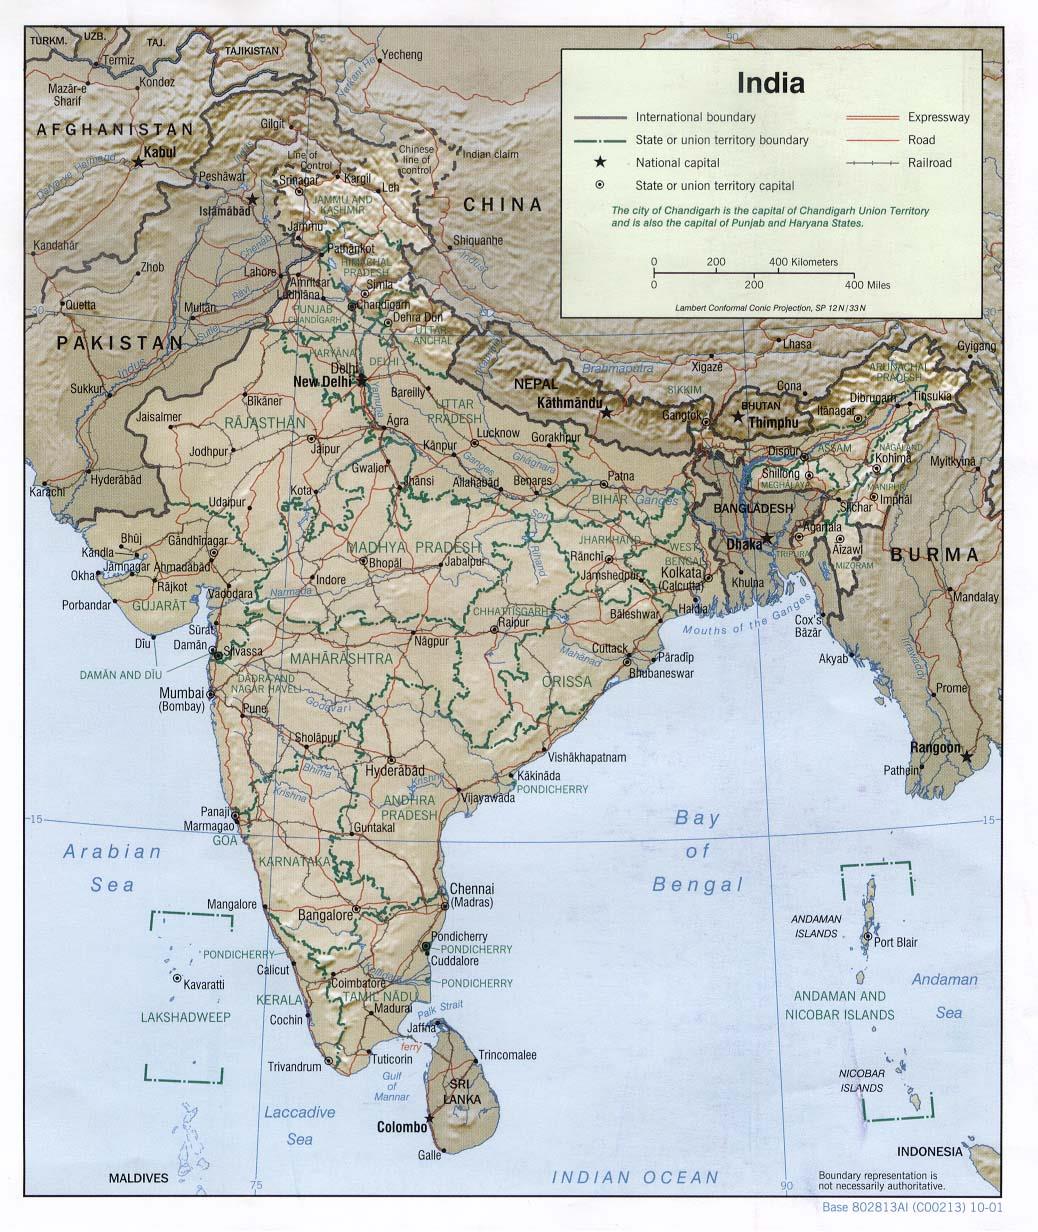 Indie Počet obyvatel: 1 236 344 631 (odhad CIA pro polovinu roku 2014) Rozloha: 2 973 193 km 2 (7. největší stát světa) HDP: 4,962 bln. USD (odhad CIA za rok 2013 podle PPP; 4.